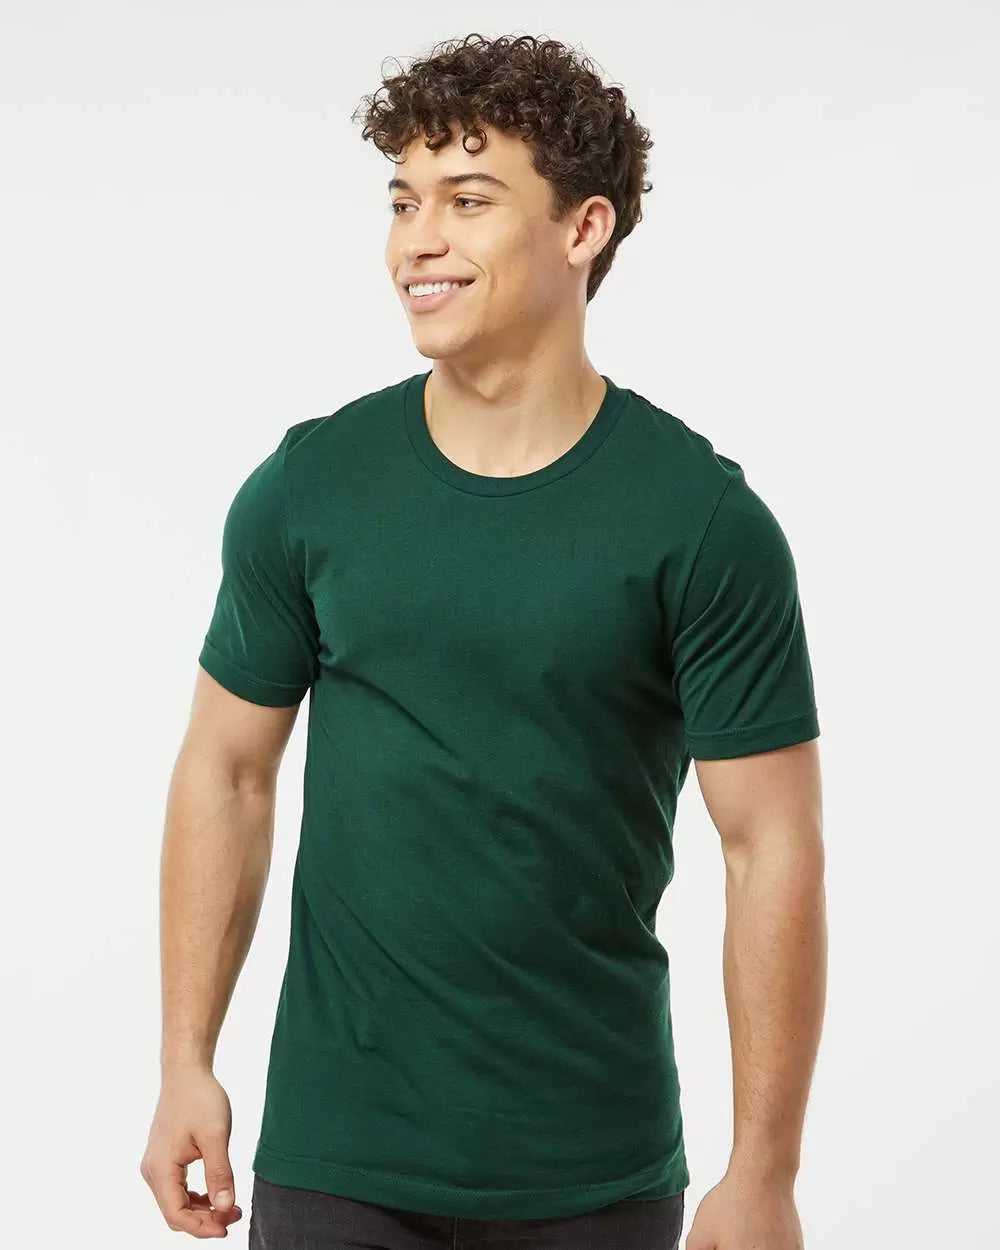 Tultex 502 Premium Cotton T-Shirt - Forest - HIT a Double - 1